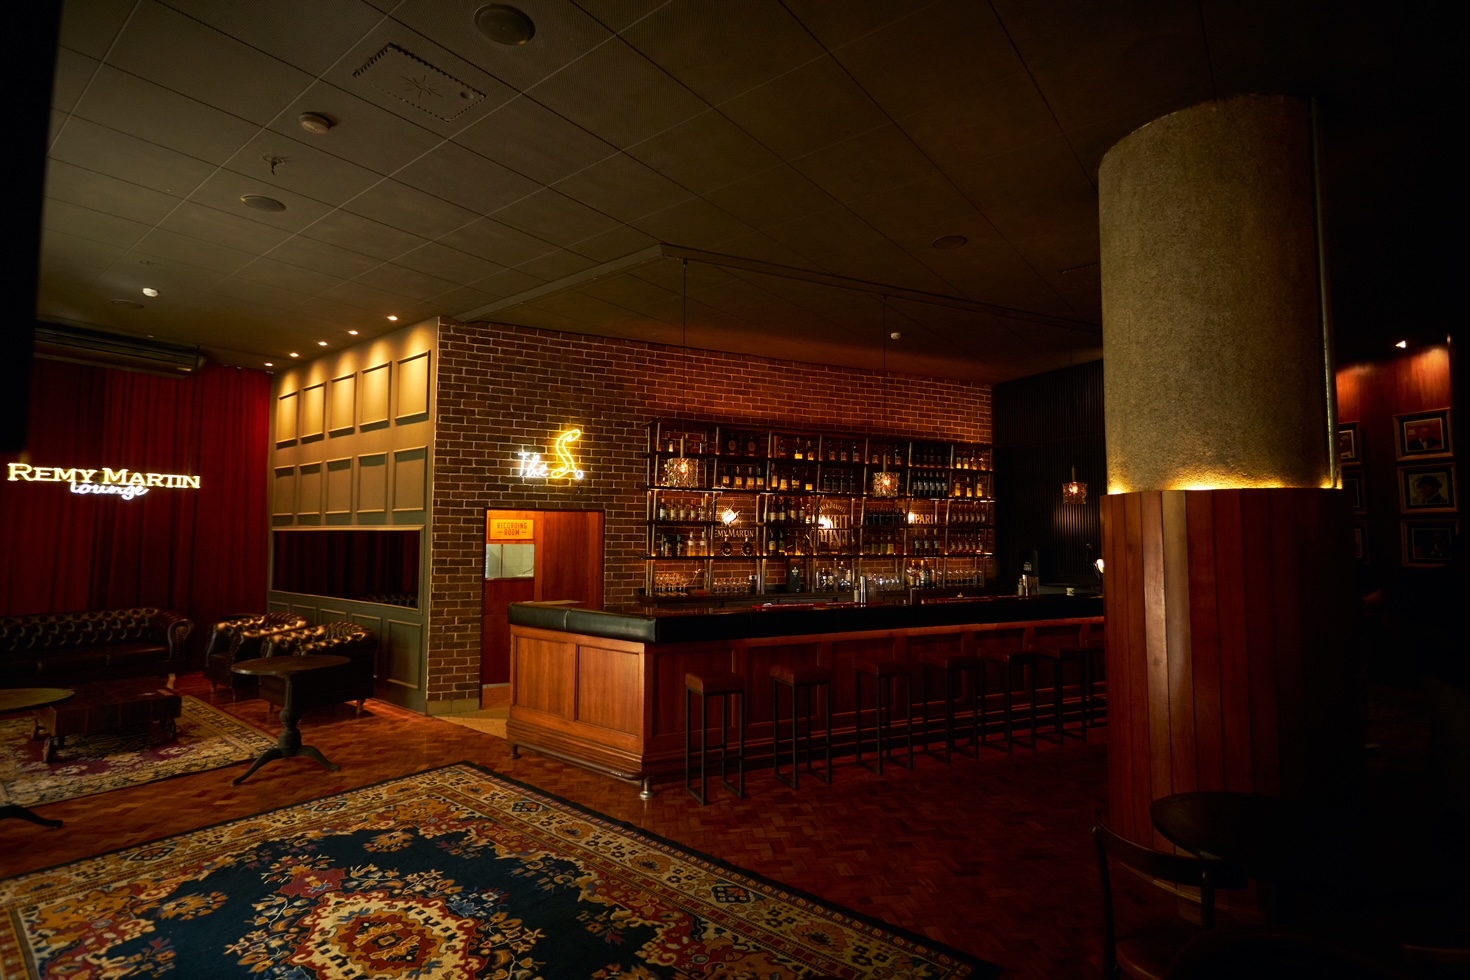 No estilo speakeasy, o novo bar paulistano fica no centro da cidade e tem influência ítalo-americana